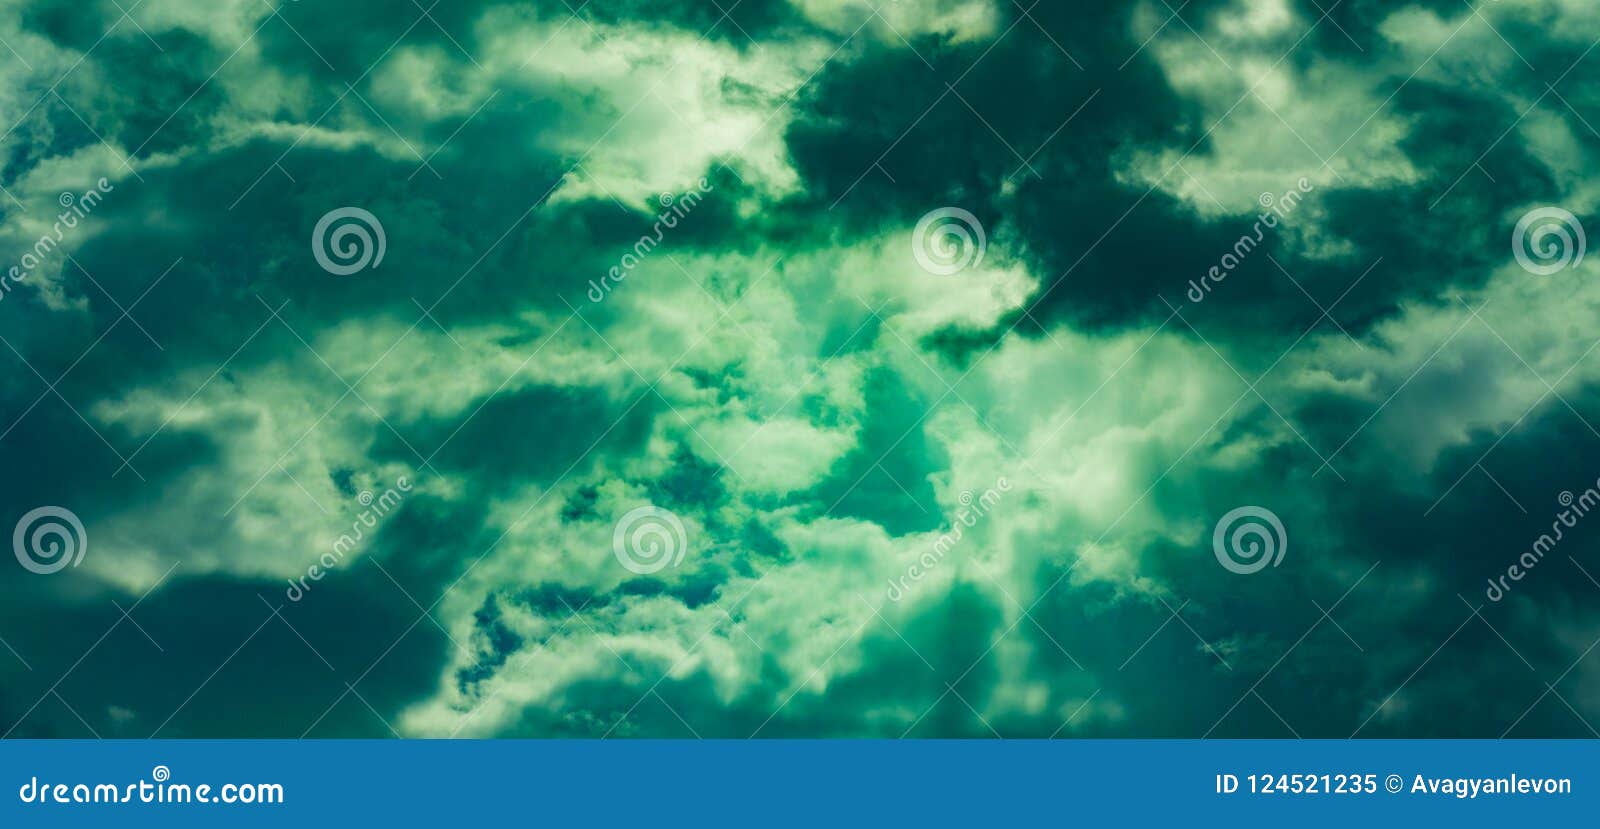 Nhìn đám mây xanh trôi êm dịu trên không trung, tâm trí bạn sẽ được làm dịu đi và cảm nhận được sự thanh thản. Hãy chiêm ngưỡng hình ảnh đẹp này để tìm lại sự bình yên trong tâm hồn.